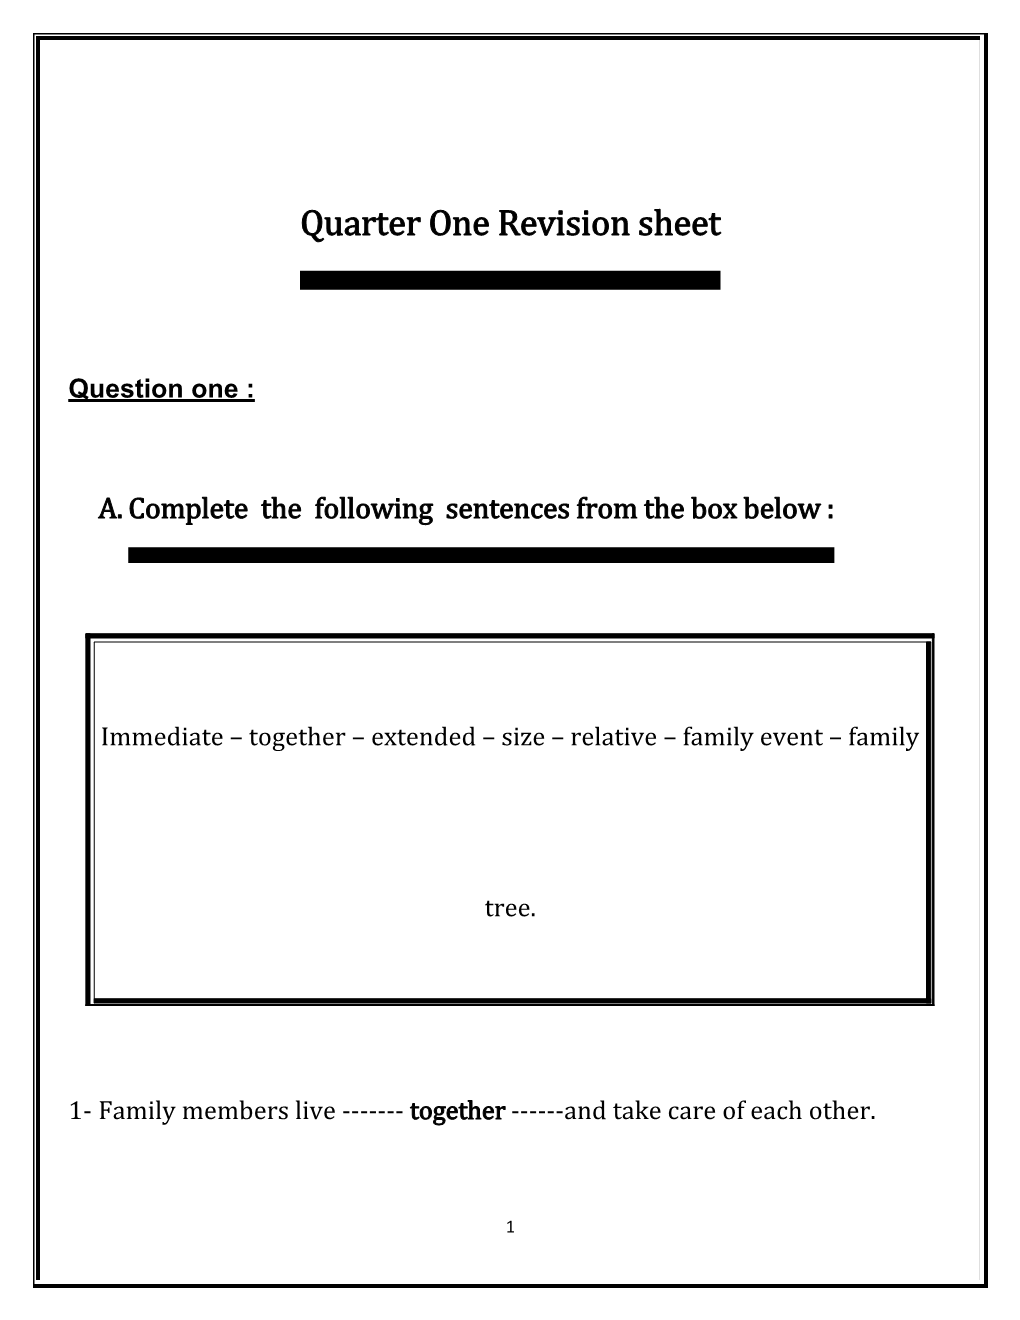 Quarter One Revision Sheet